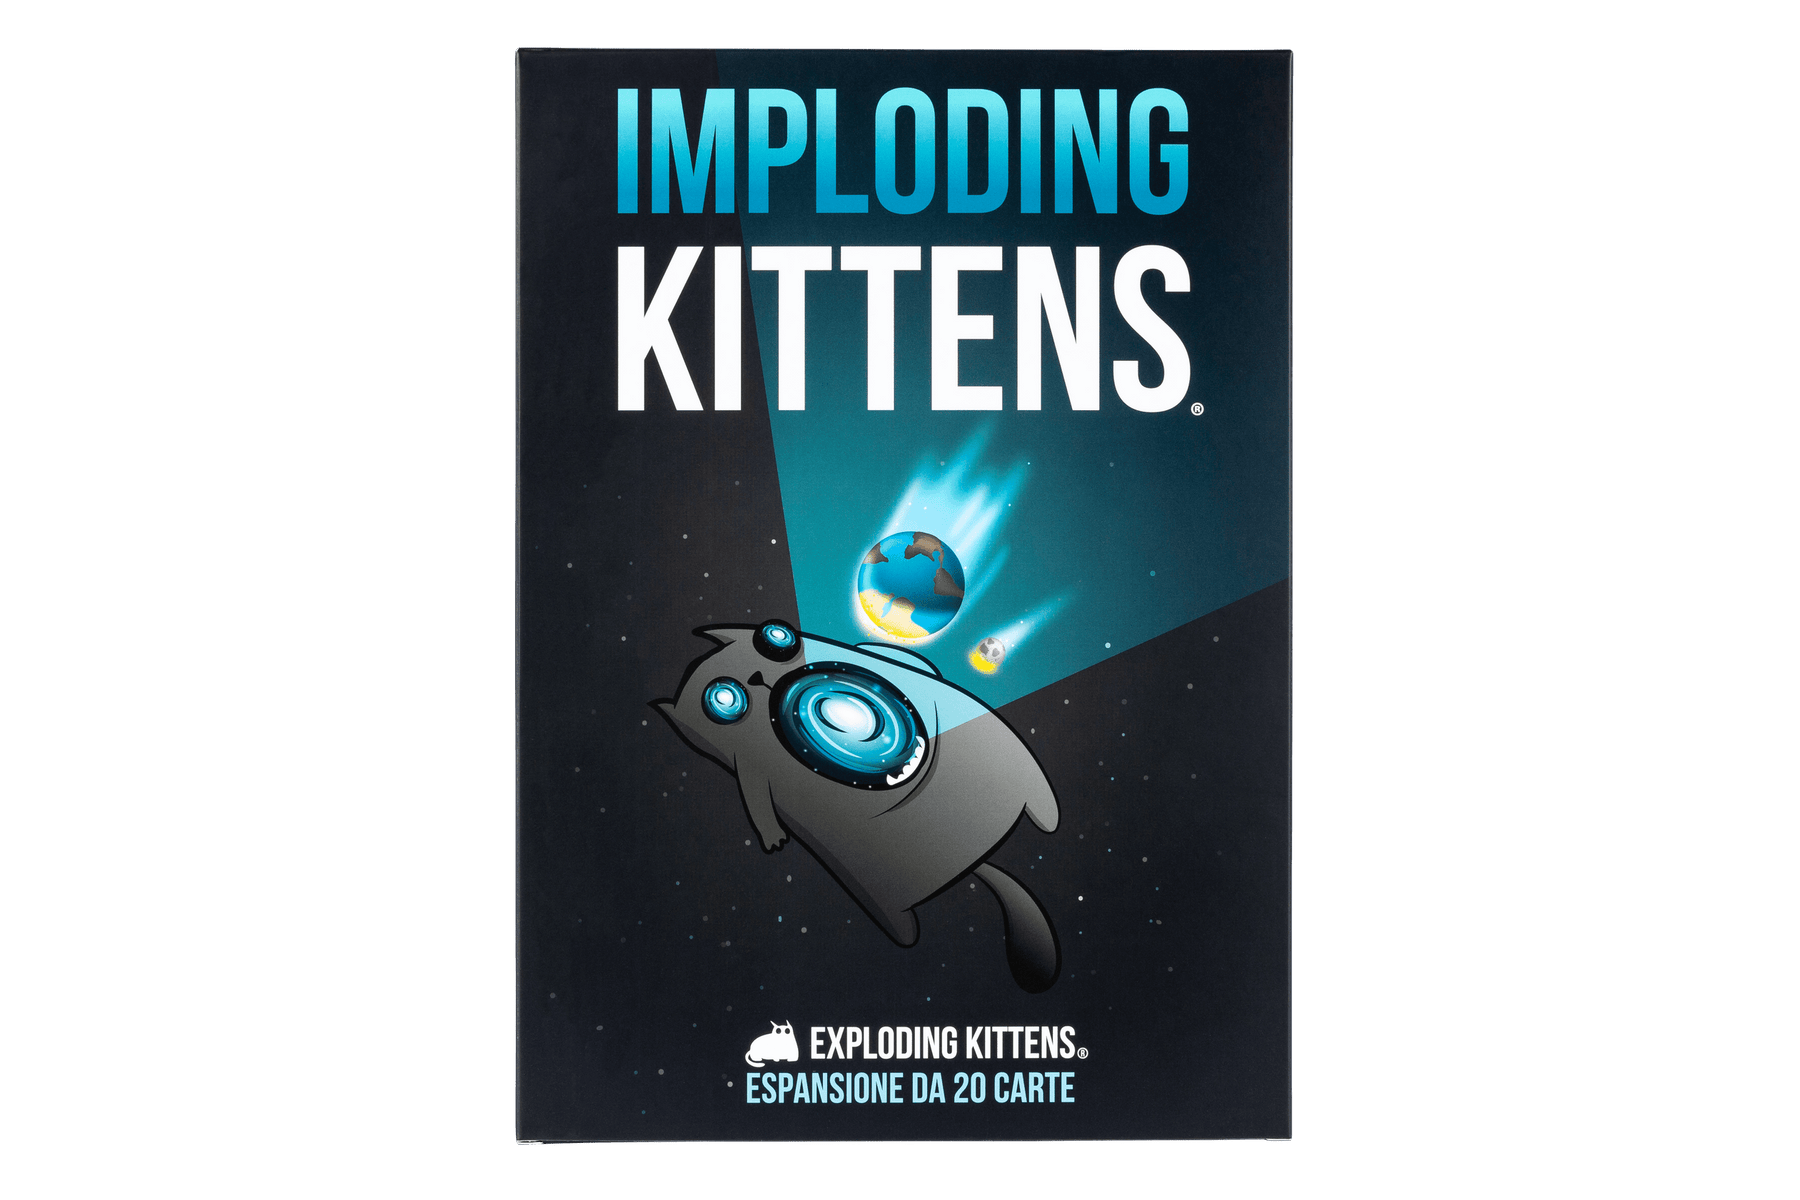 Imploding Kittens Expansion  Exploding Kittens Expansion Pack